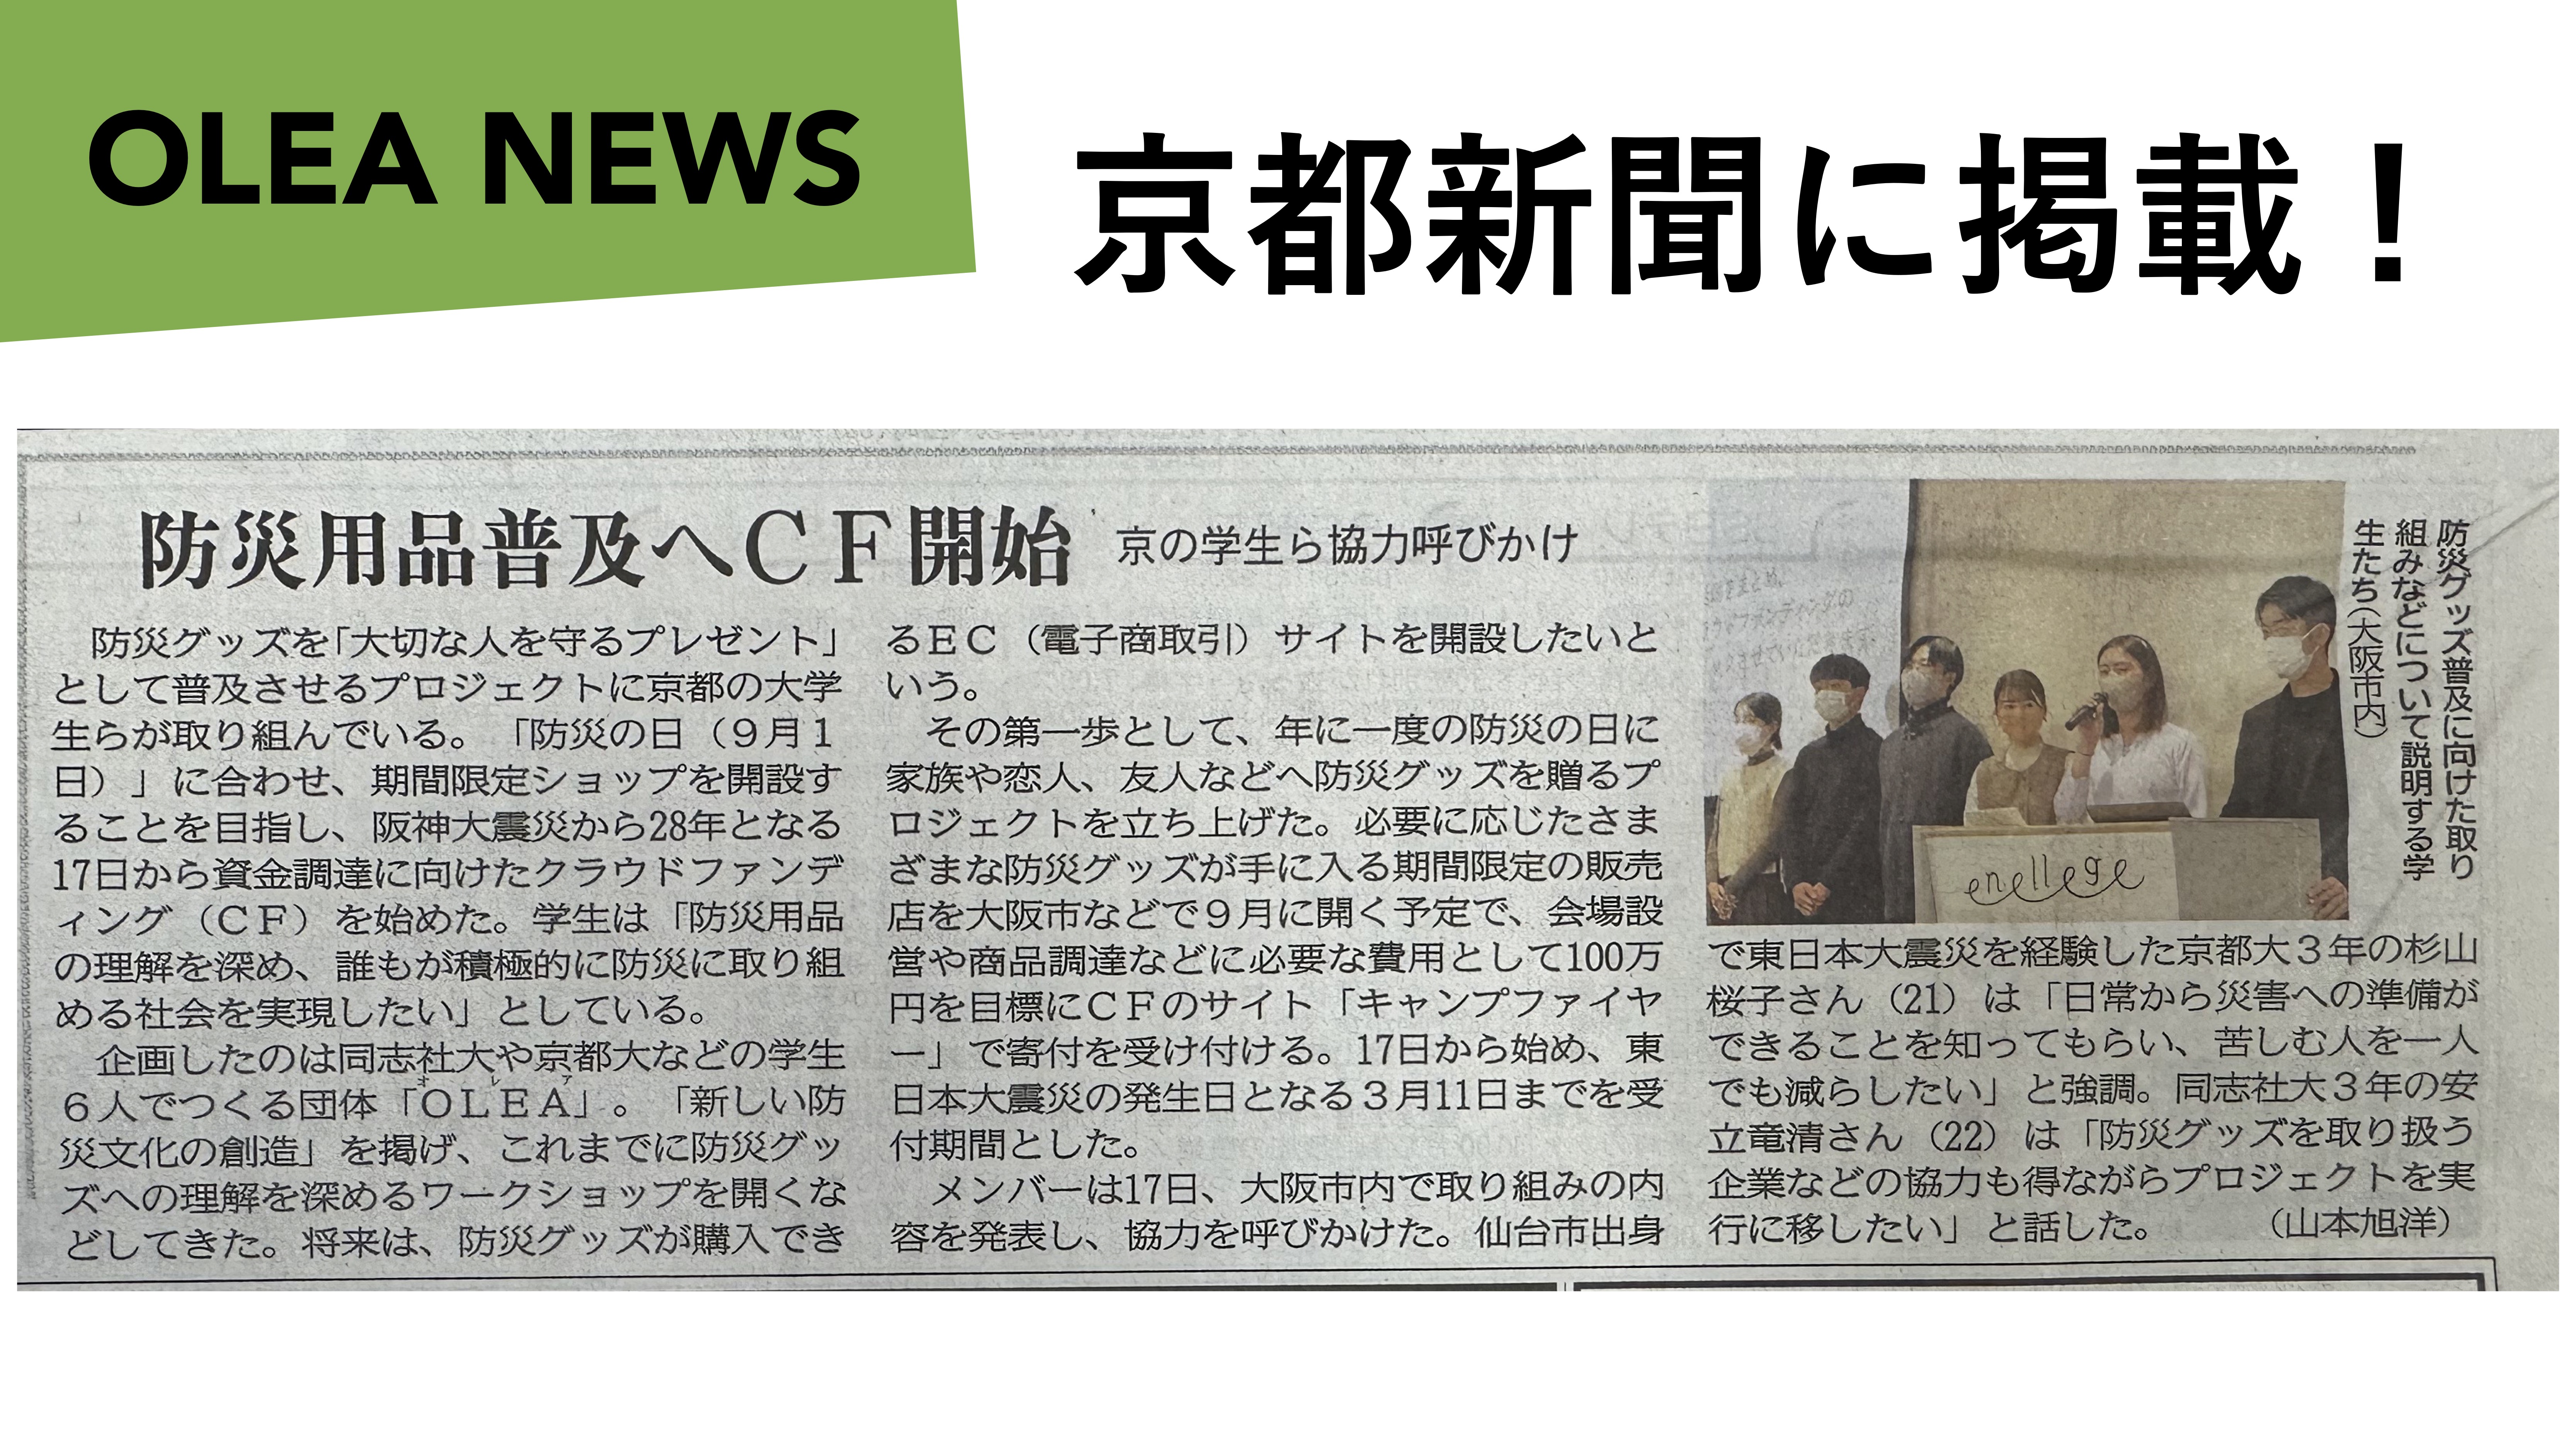 クラファン始動イベントの様子が京都新聞に掲載されました !